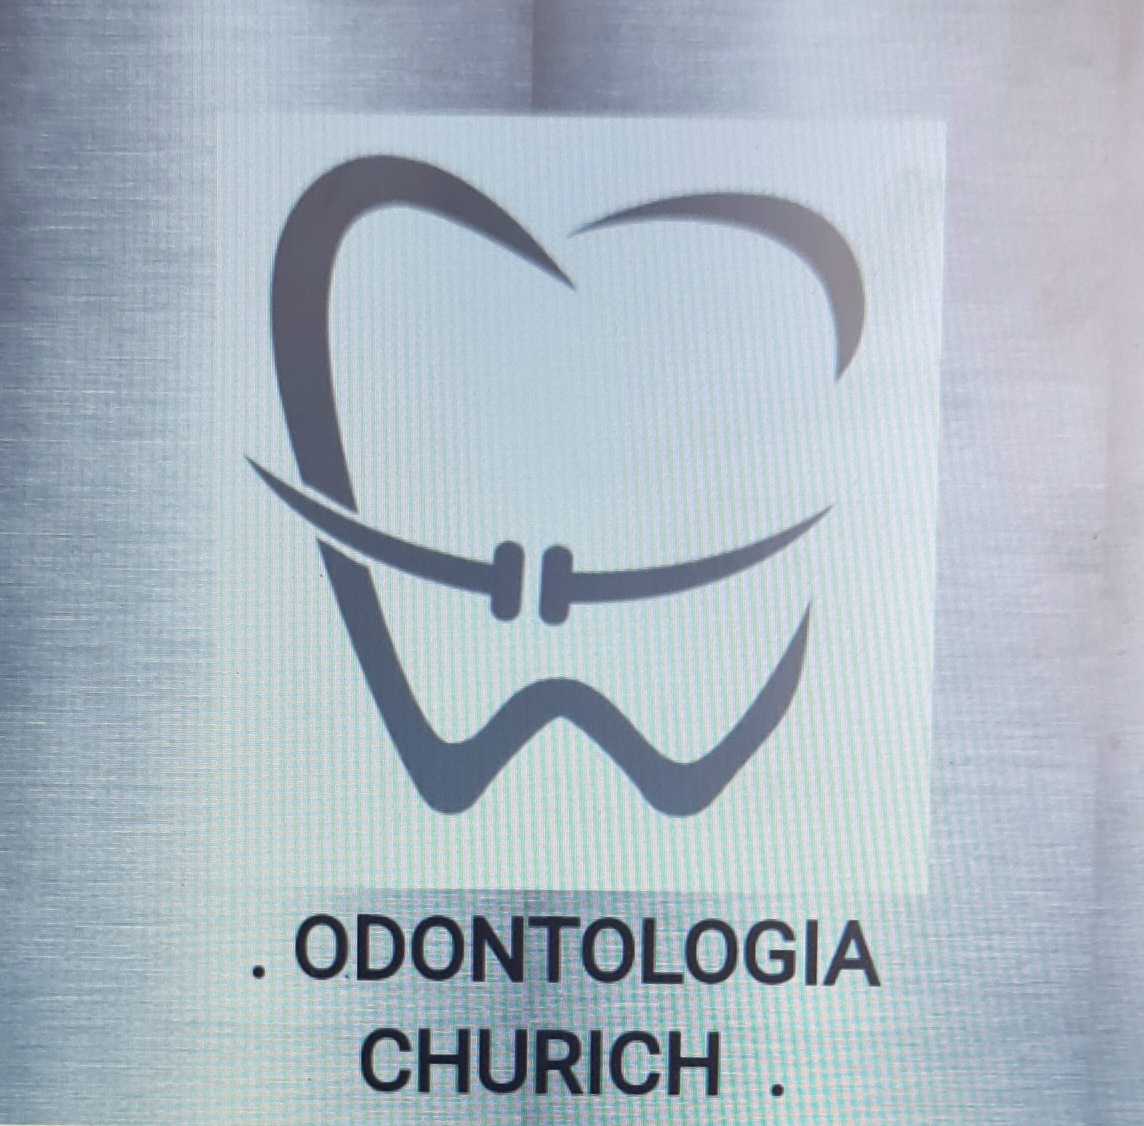 Odontologia churich